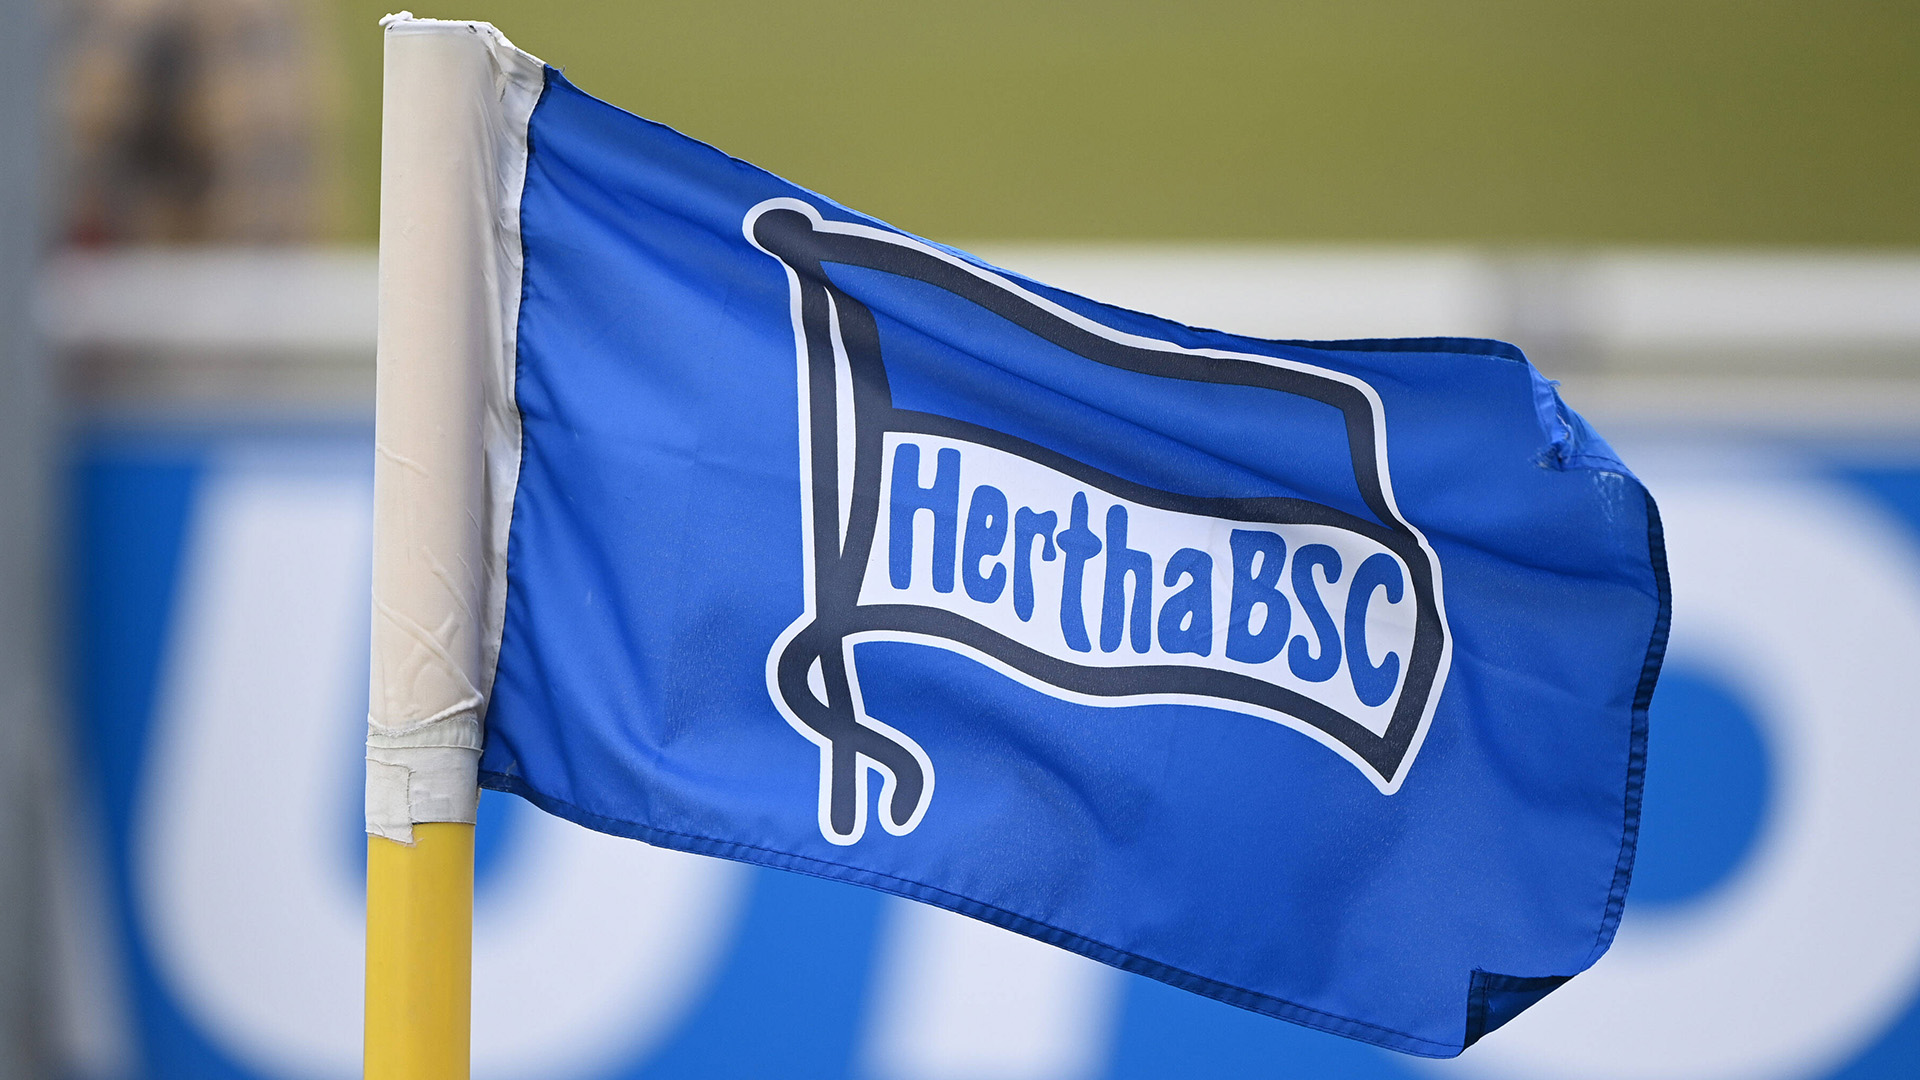 Das Logo von Hertha BSC auf einer Eckfahne (Bild: IMAGO/Matthias Koch)